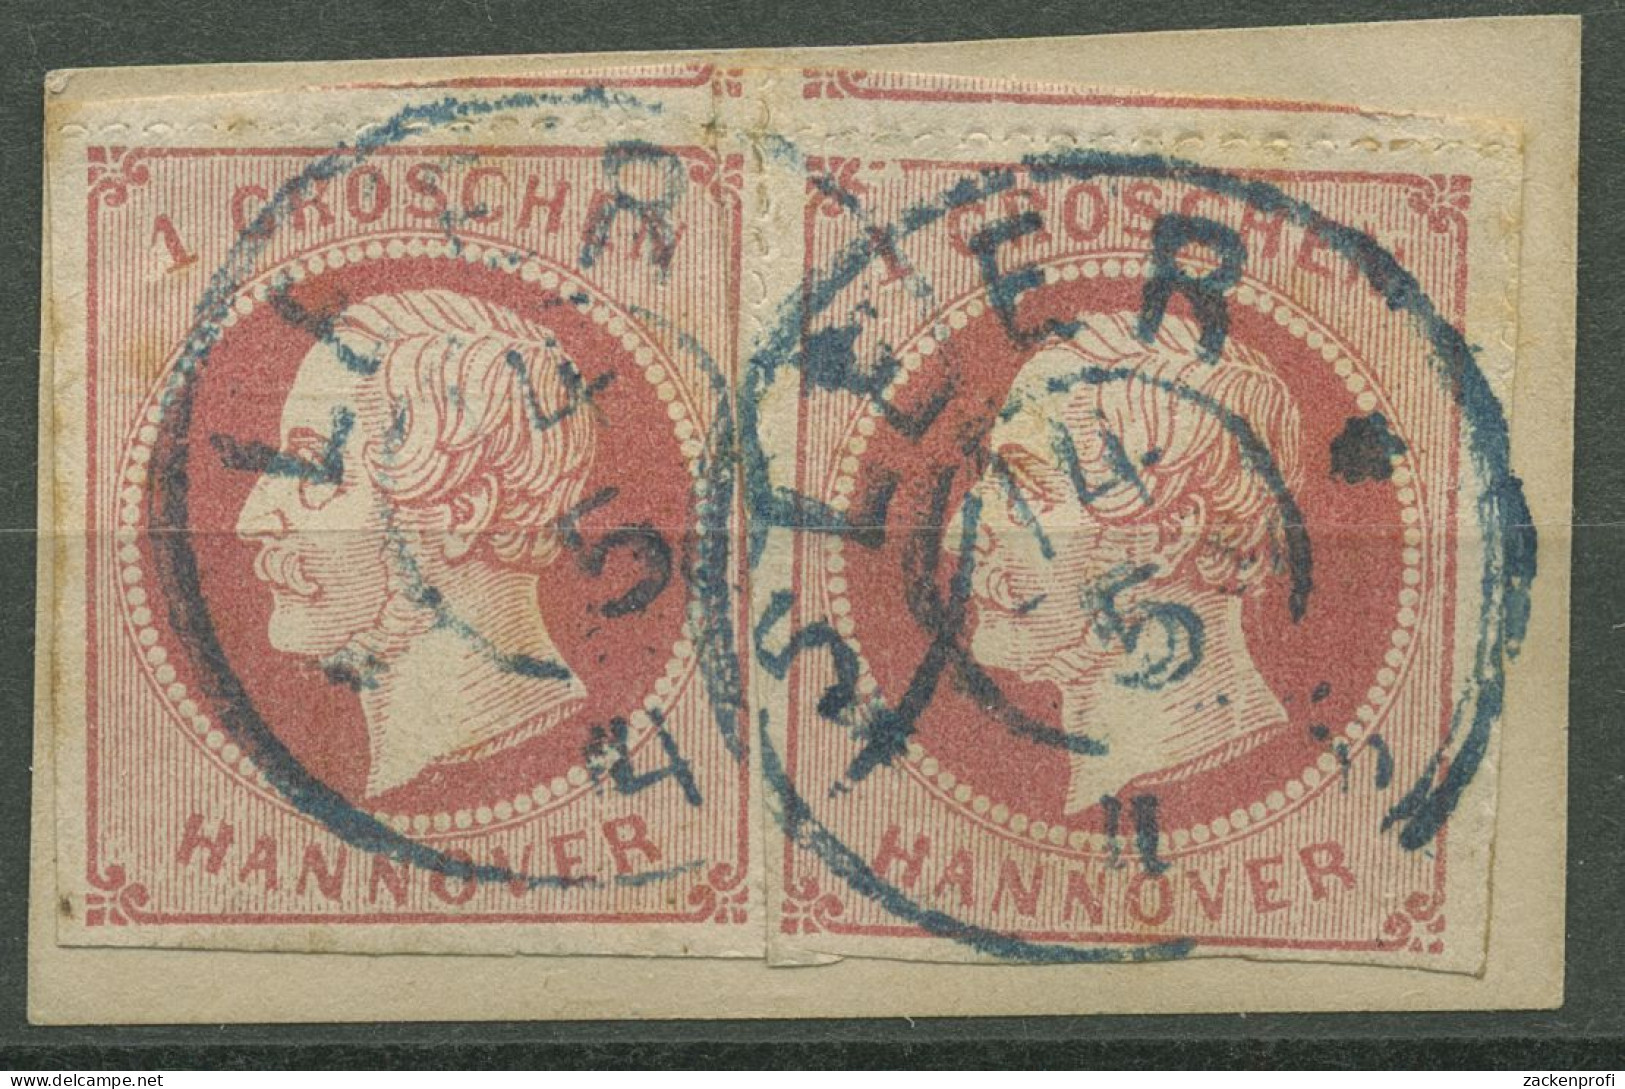 Hannover 1864 König Georg V. 1 Gr, 23 Y (2) Mit K2-Stpl. LEER, Briefstück - Hanovre